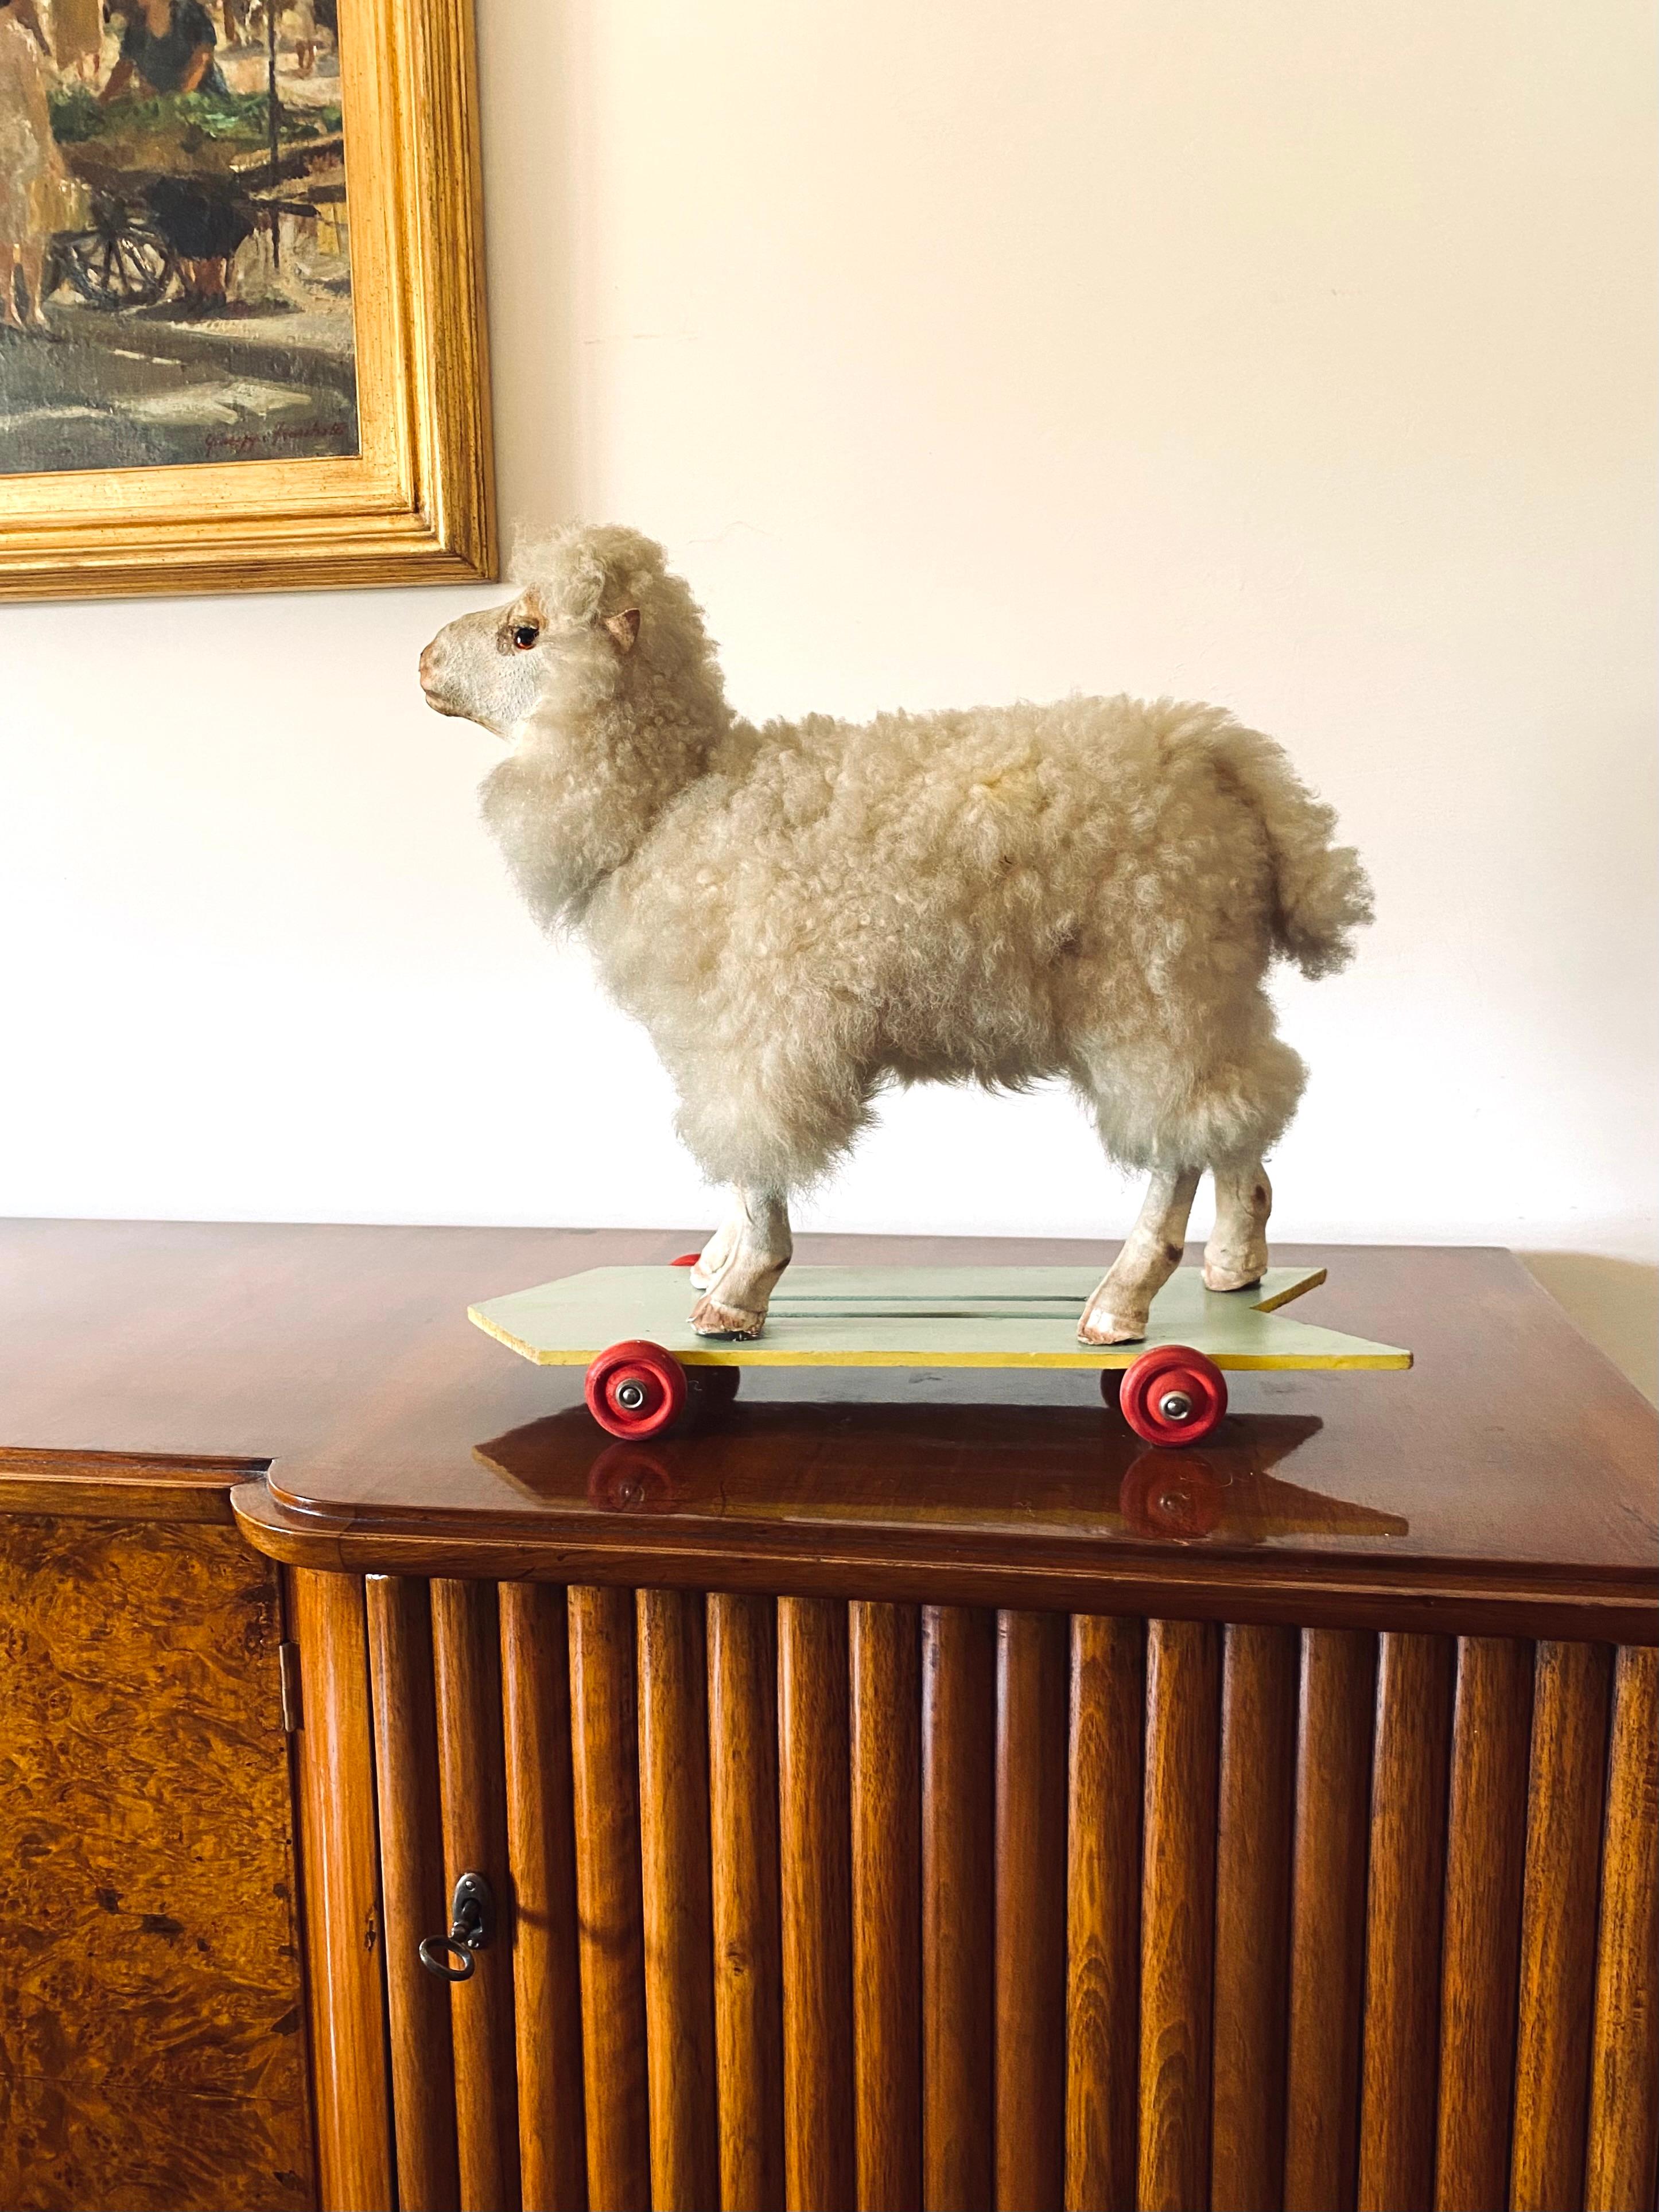 Folk Art Schaf Rolling Toy

Deutschland, erste Hälfte des 20. Jahrhunderts

Wolle, Holz, Stoff

Mit gebeugtem Hals blökt das Schaf. 

Hohe Handwerkskunst.

H 40 cm - 46 x 18 cm

Zustand: gut, alters- und gebrauchsgemäß. Die Fotos werden als